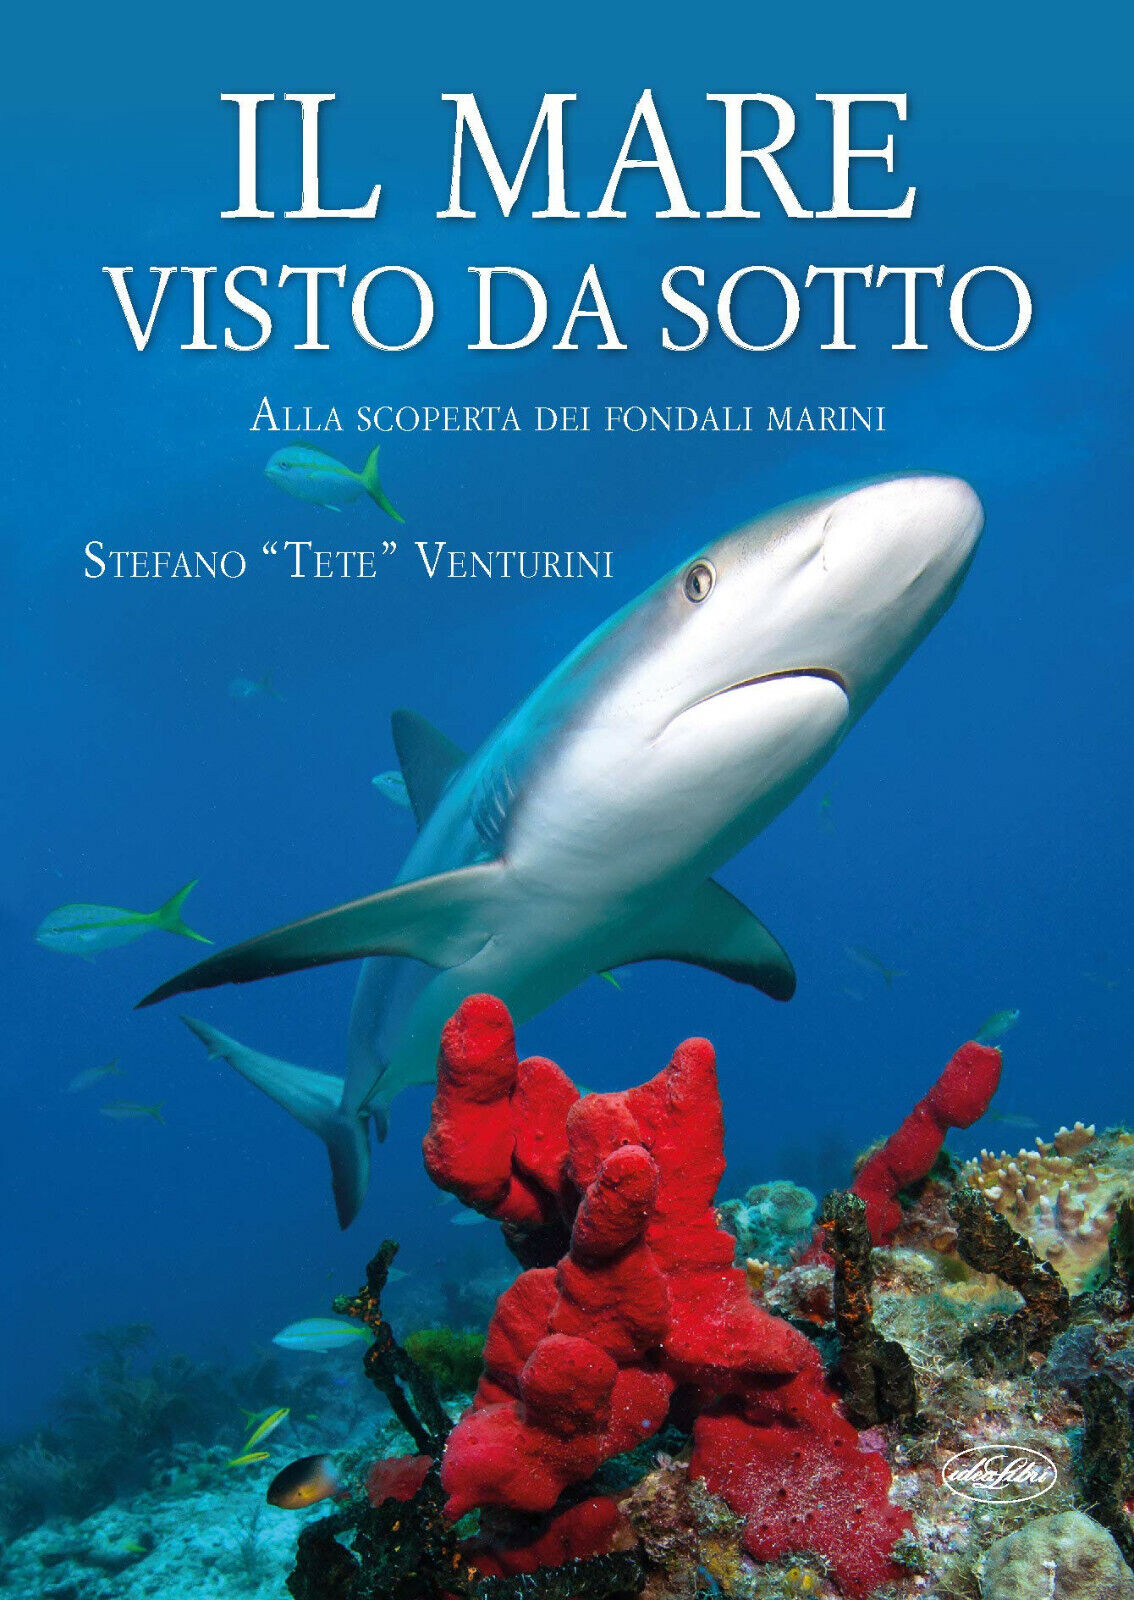 Il mare visto da sotto - Stefano Tete Venturini - Idea libri, 2019